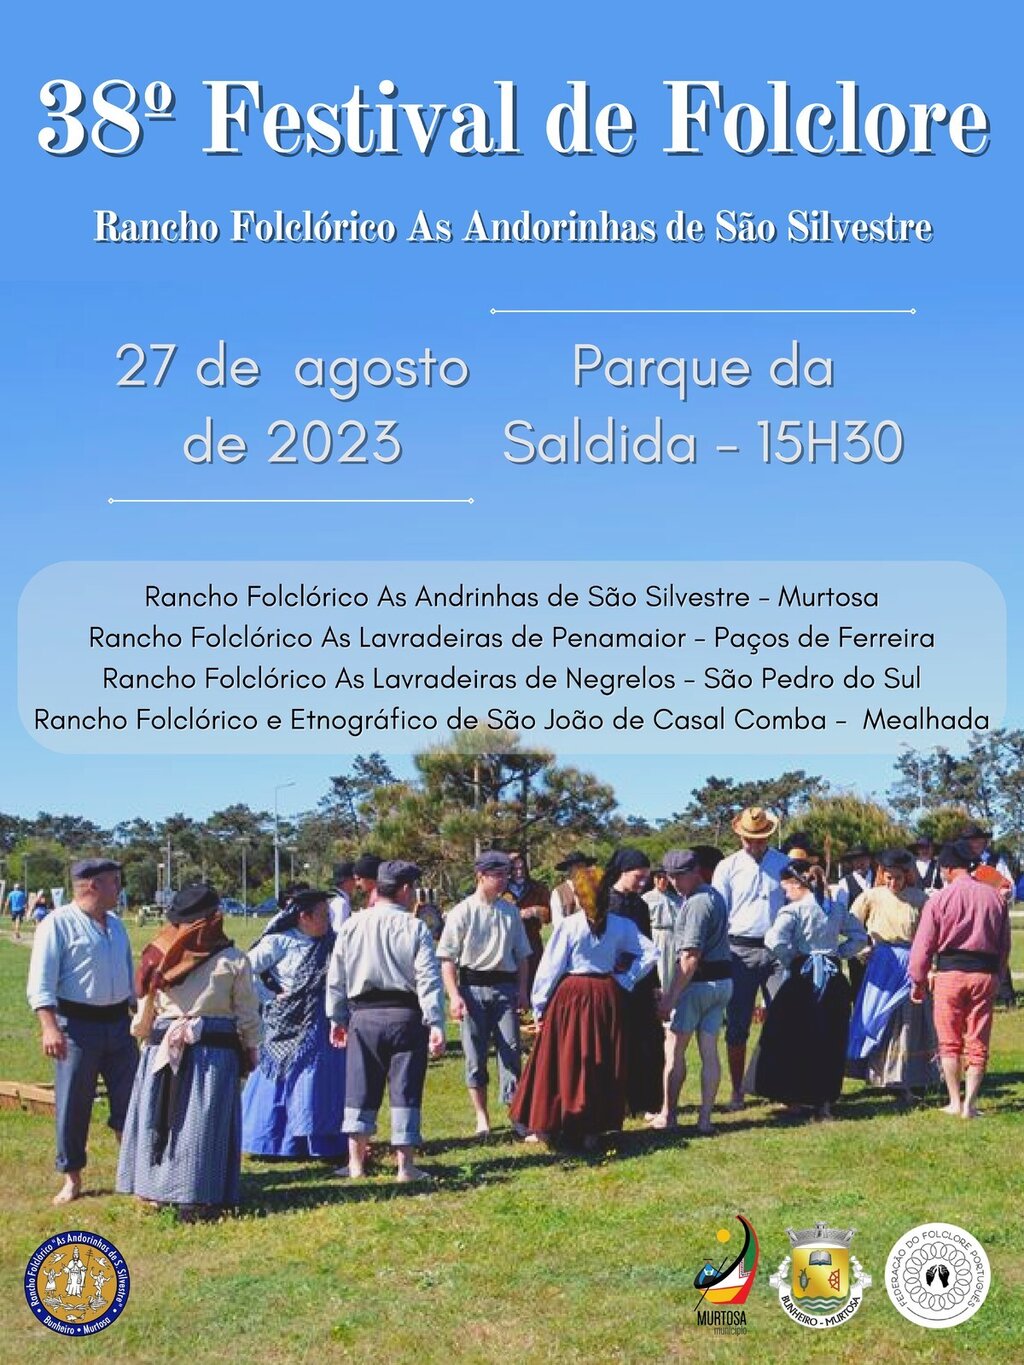 38º Festival de Folclore - As Andorinhas de São Silvestre